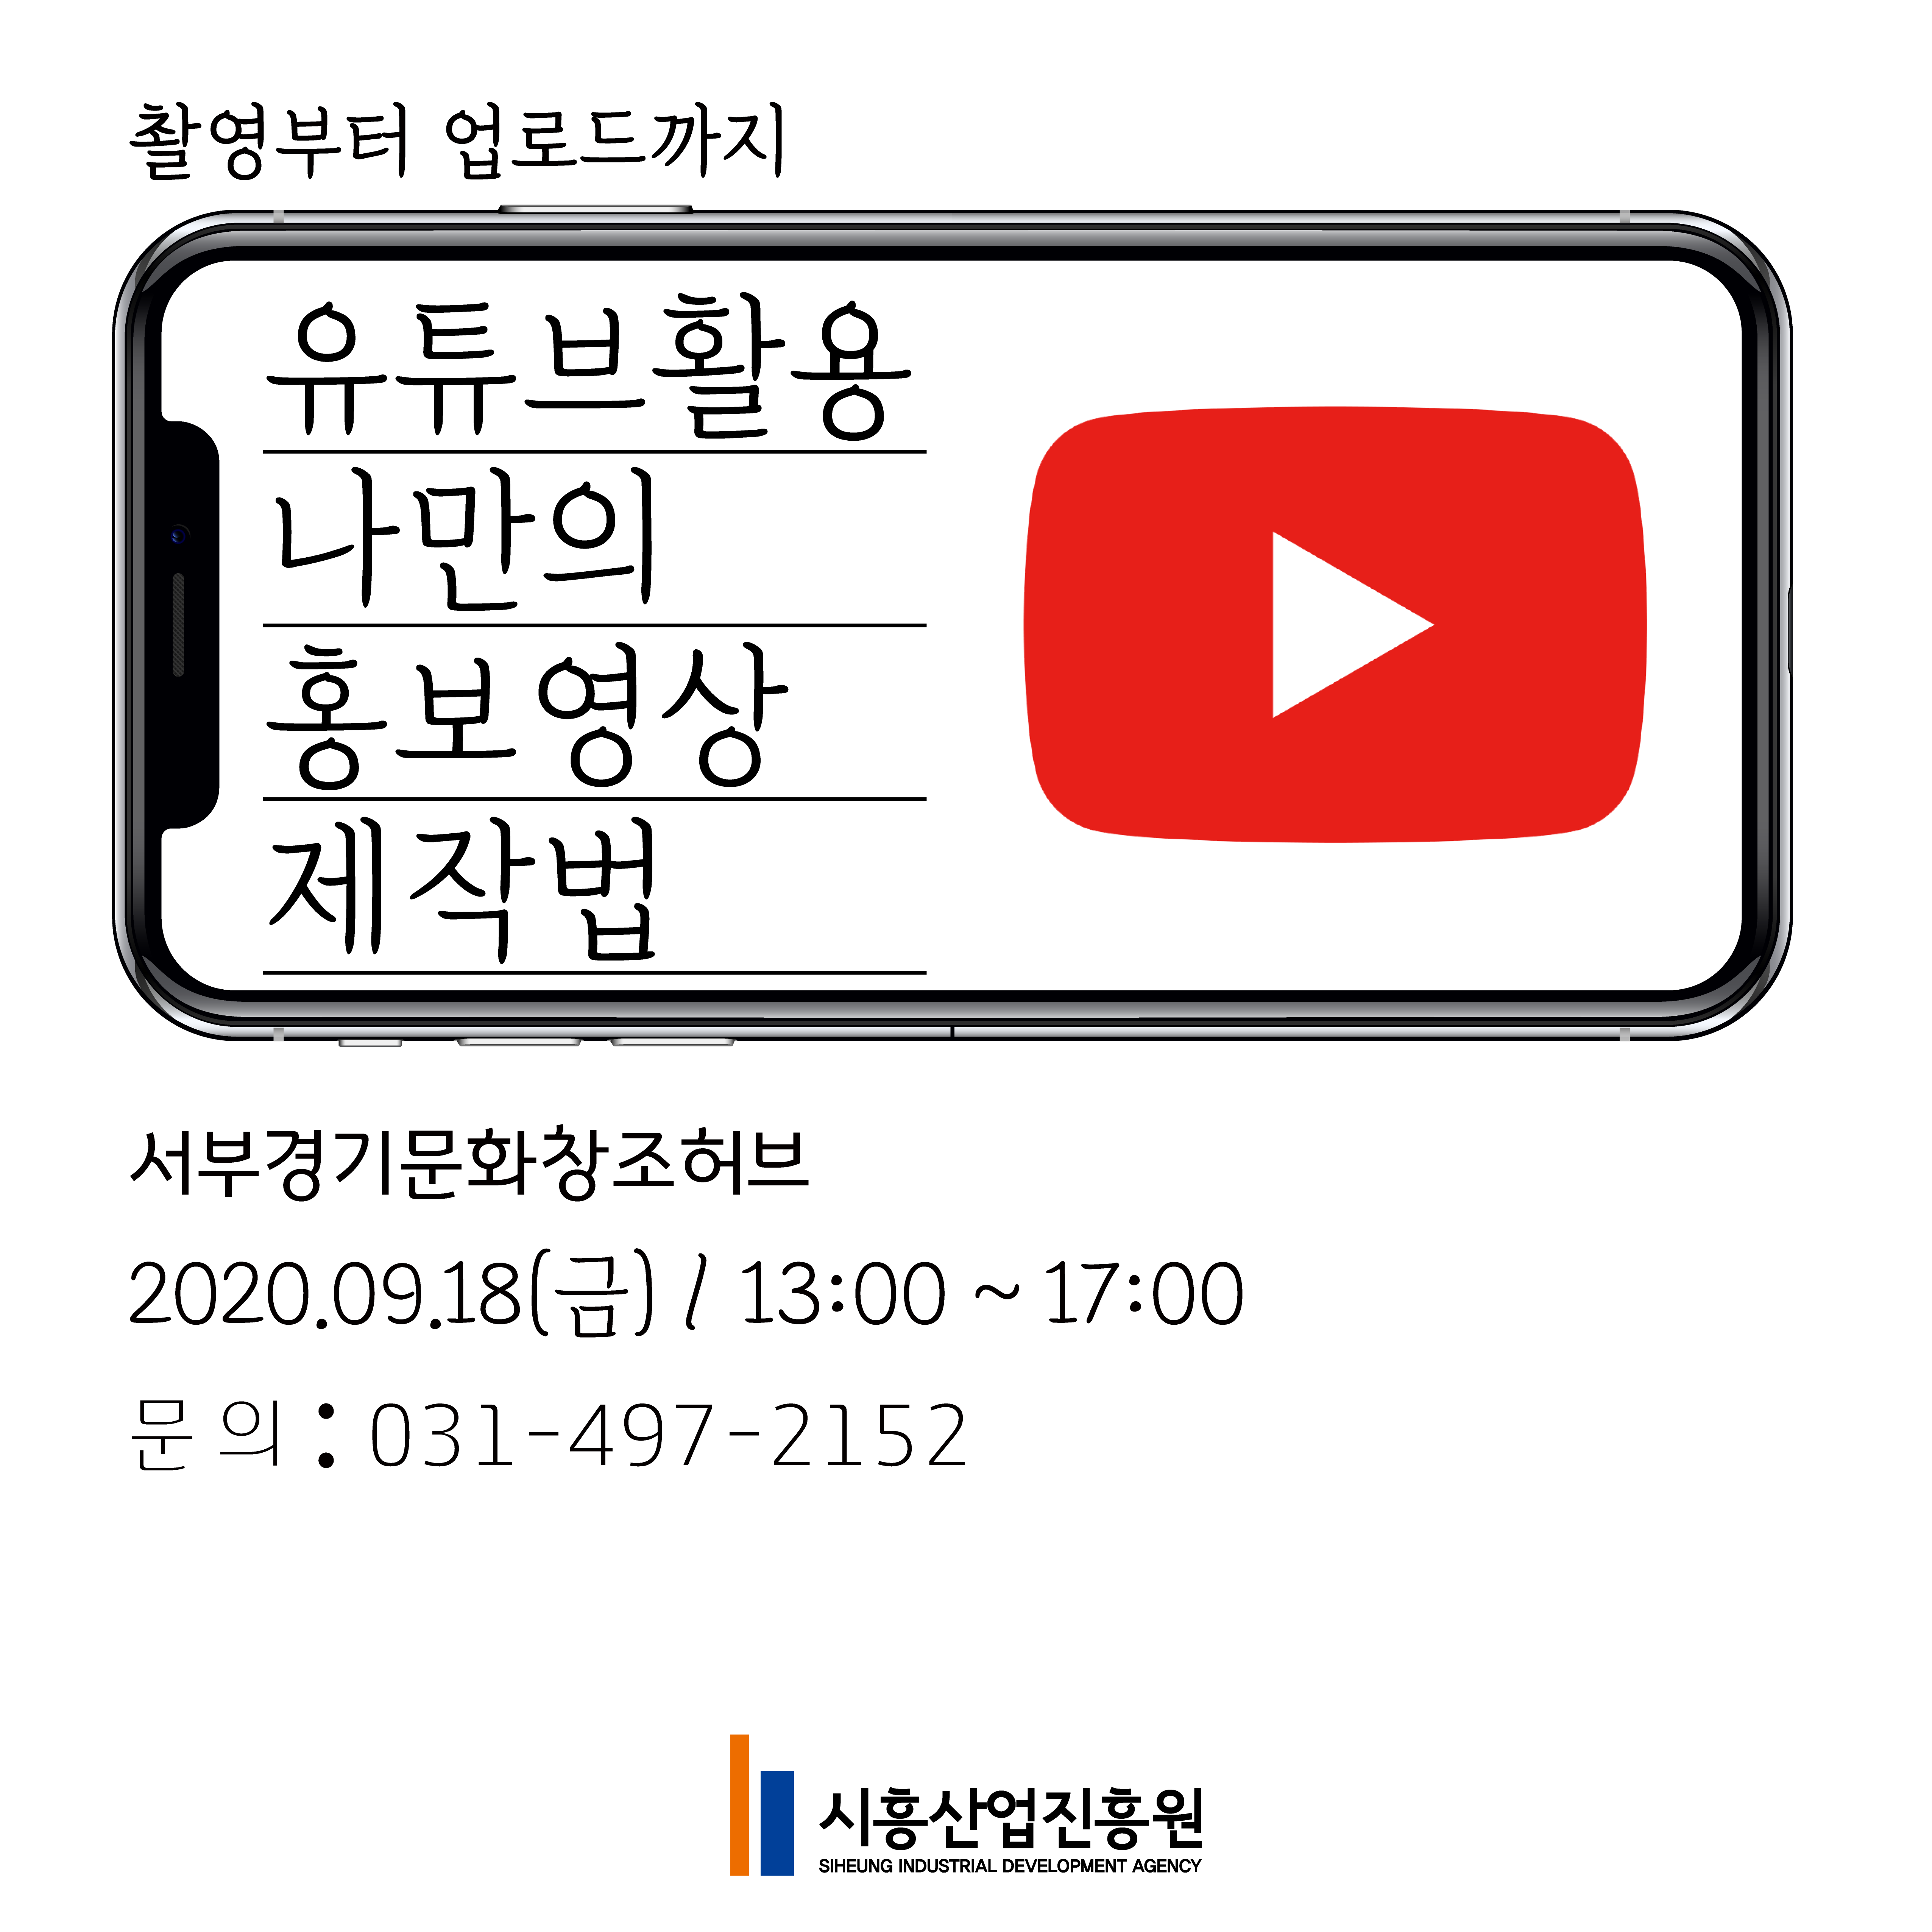 유튜브활용 나만의 홍보영상 제작법 온라인 교육